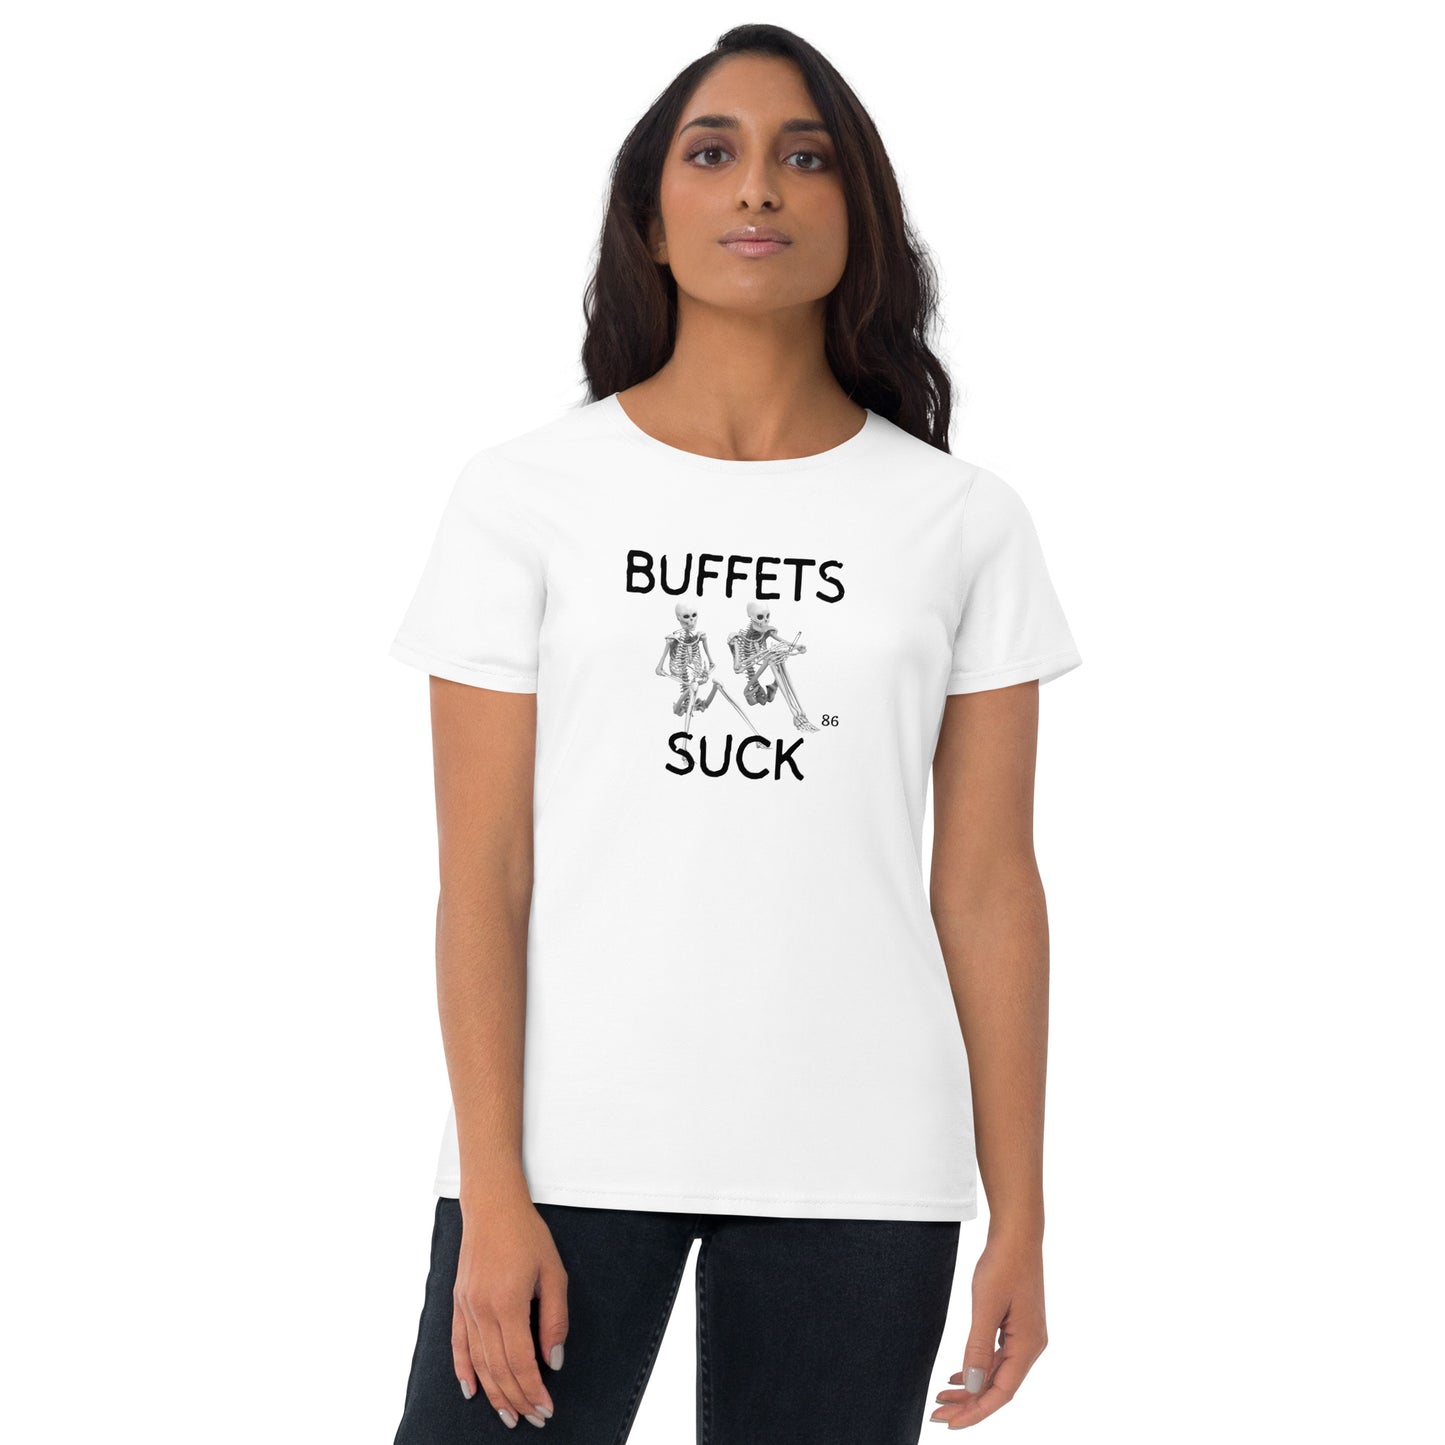 BUFFETS SUCK 2 Women's short sleeve t-shirt